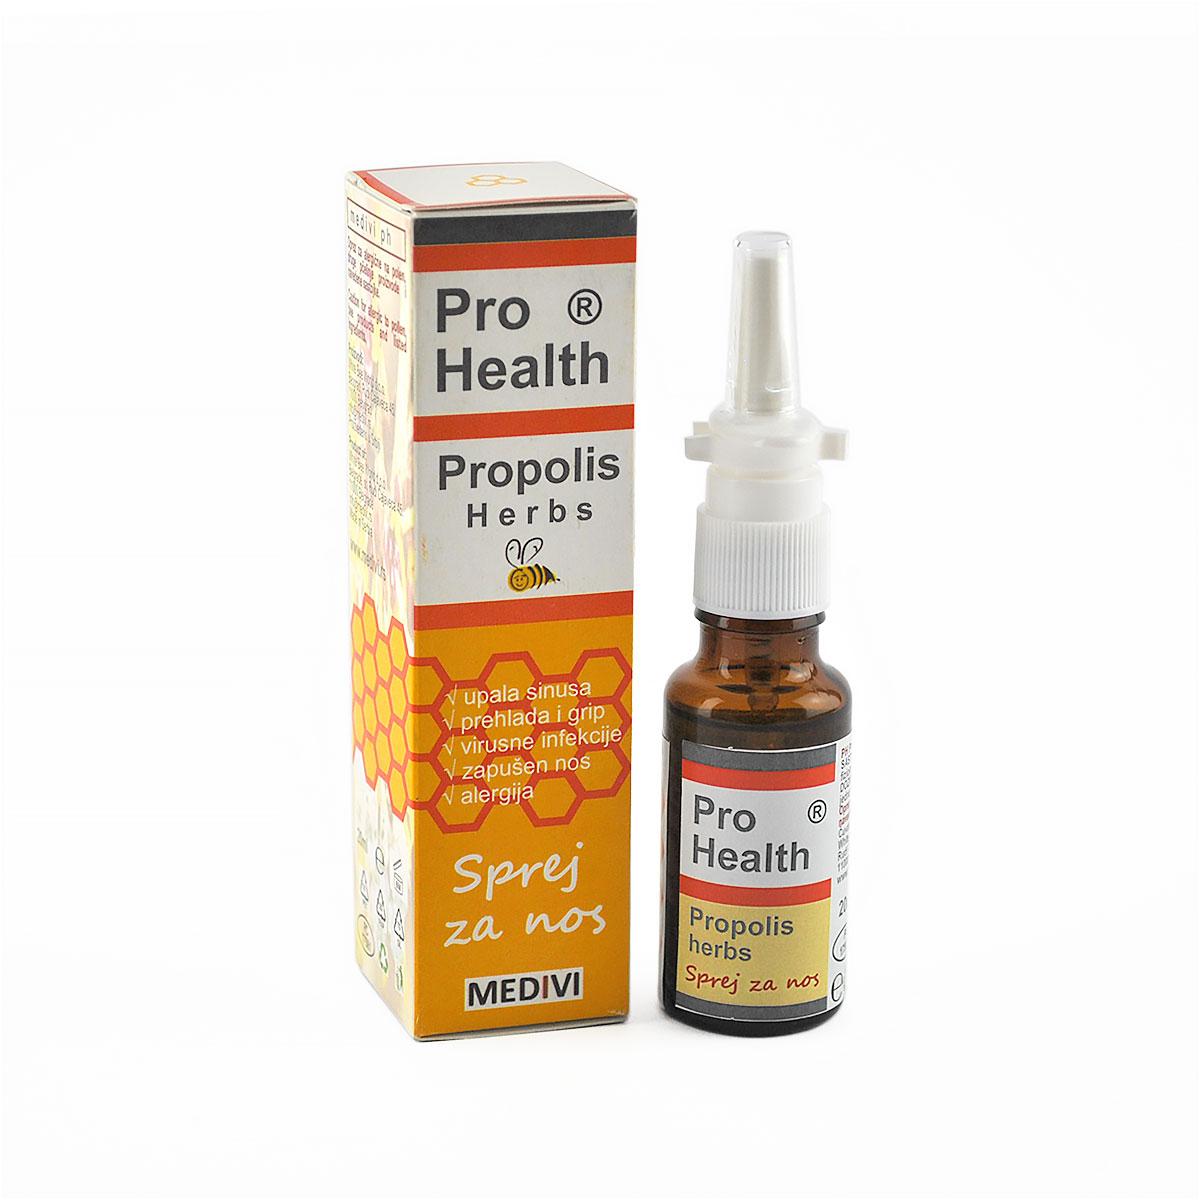 MEDIVI Propolis Herbs sprej za nos Pro Health 20ml